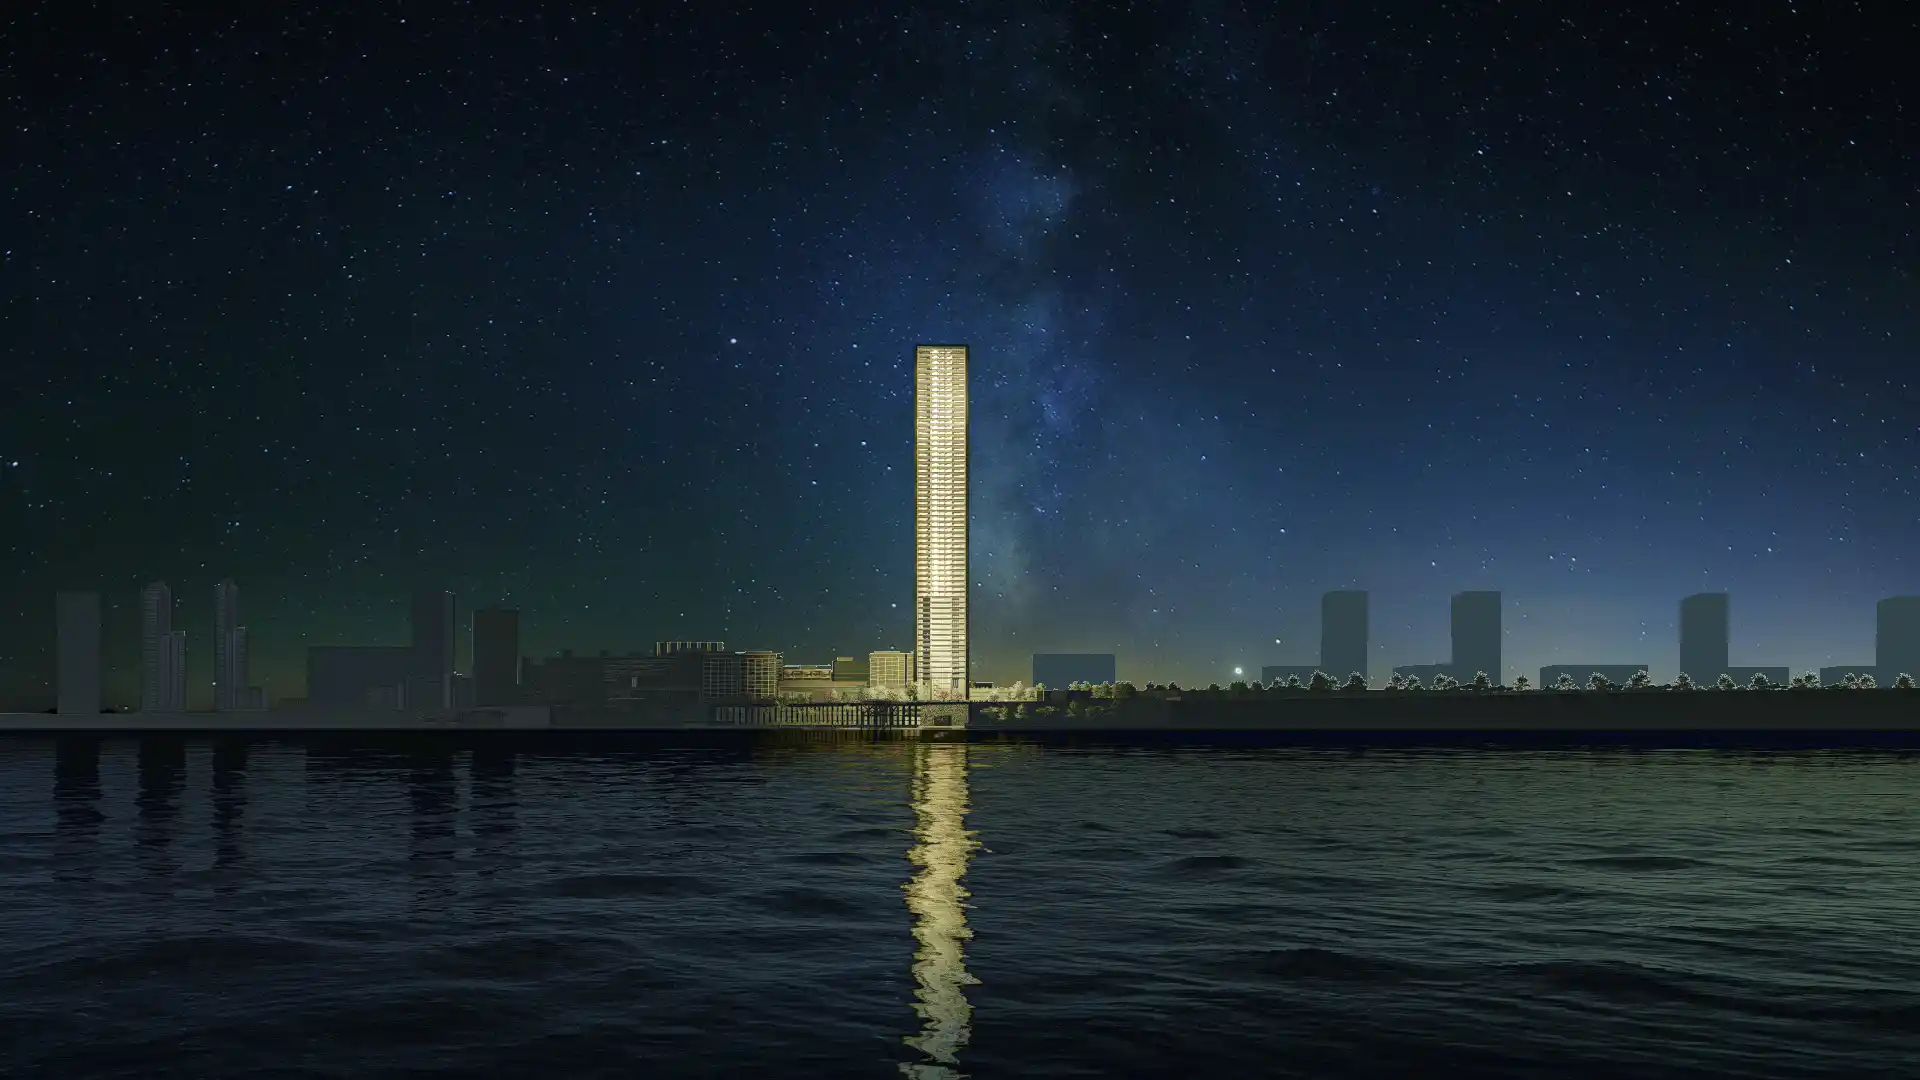 Así será uno de los nuevos rascacielos más altos de Sudamérica: imágenes